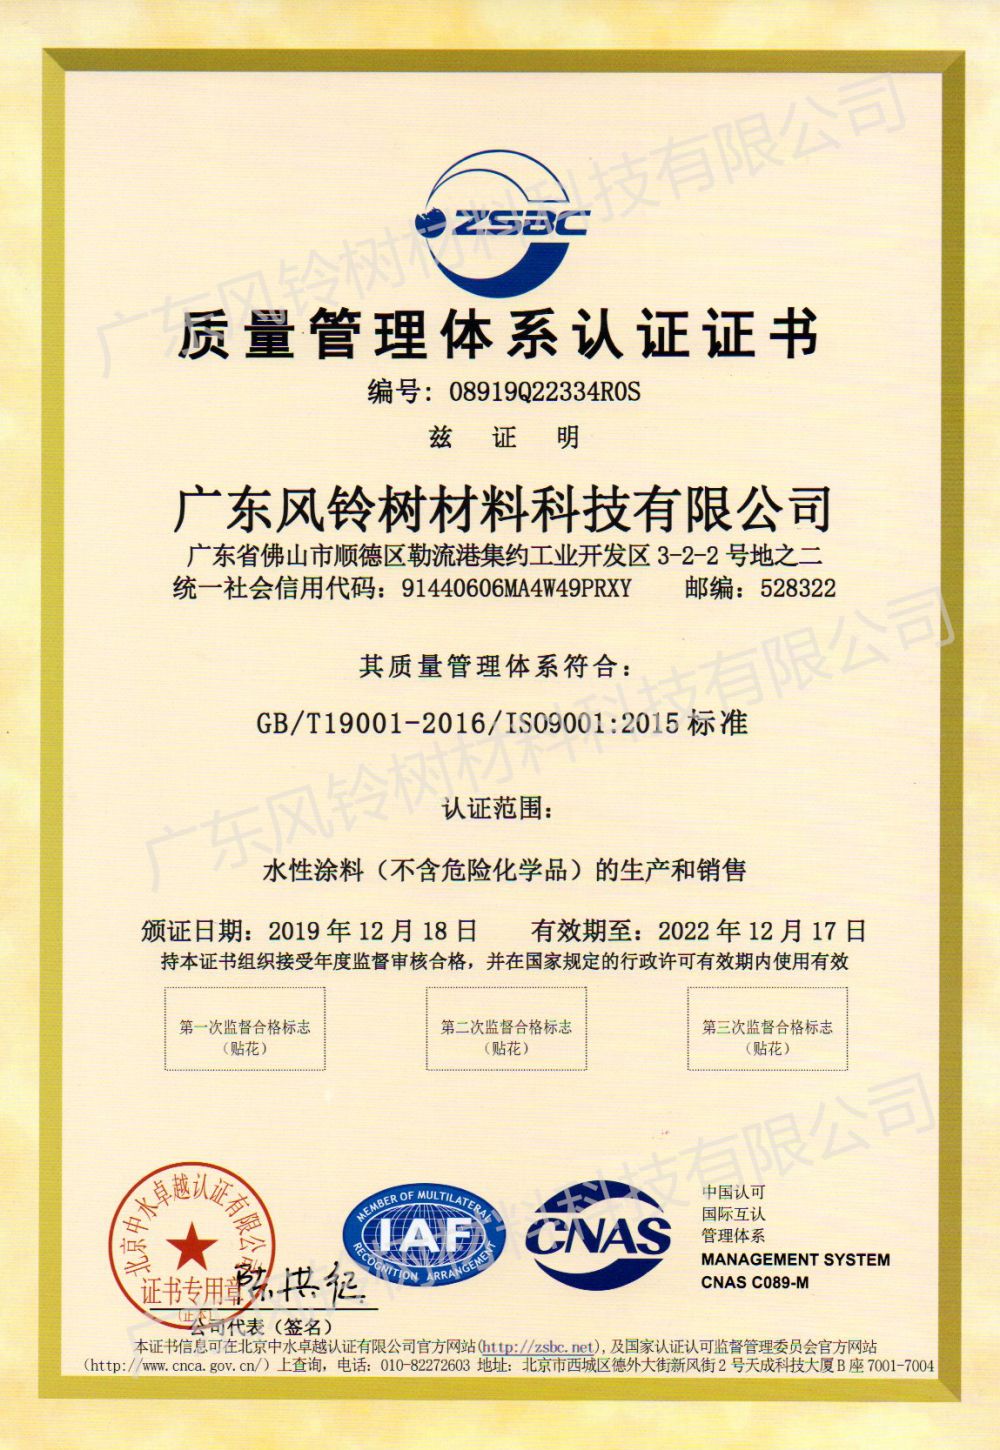 ISO90012015 Sètifikasyon Sistèm Jesyon Kalite